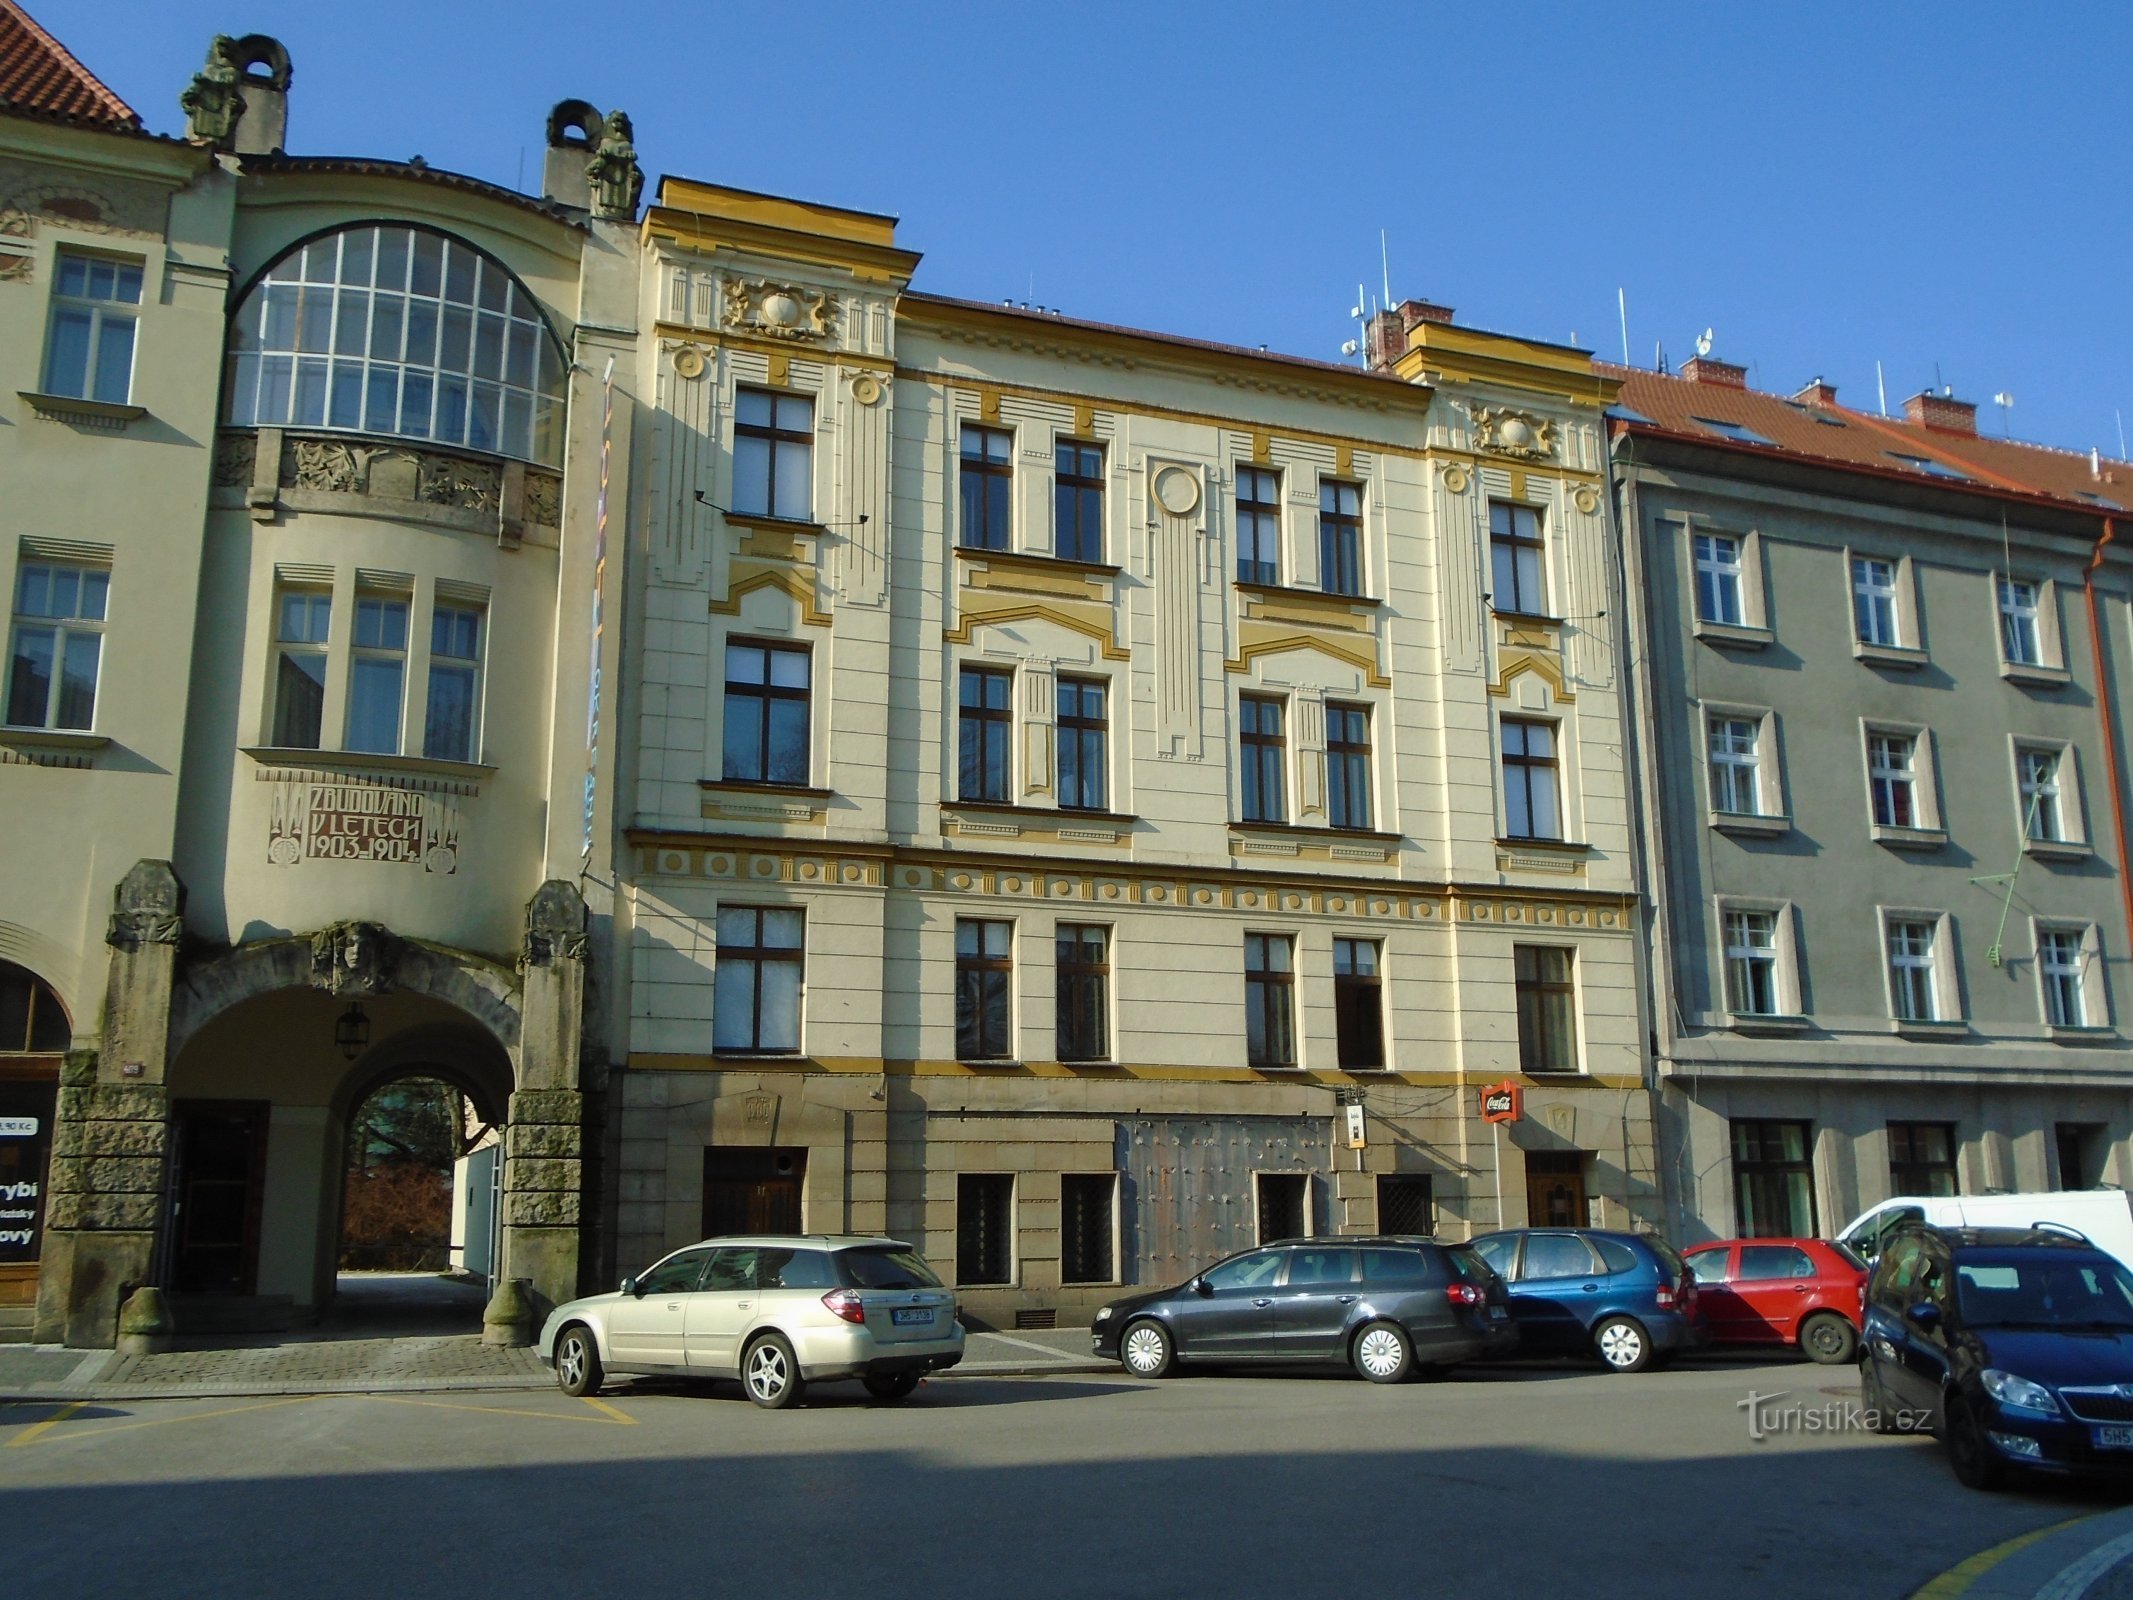 Palackého nr. 359 (Hradec Králové)